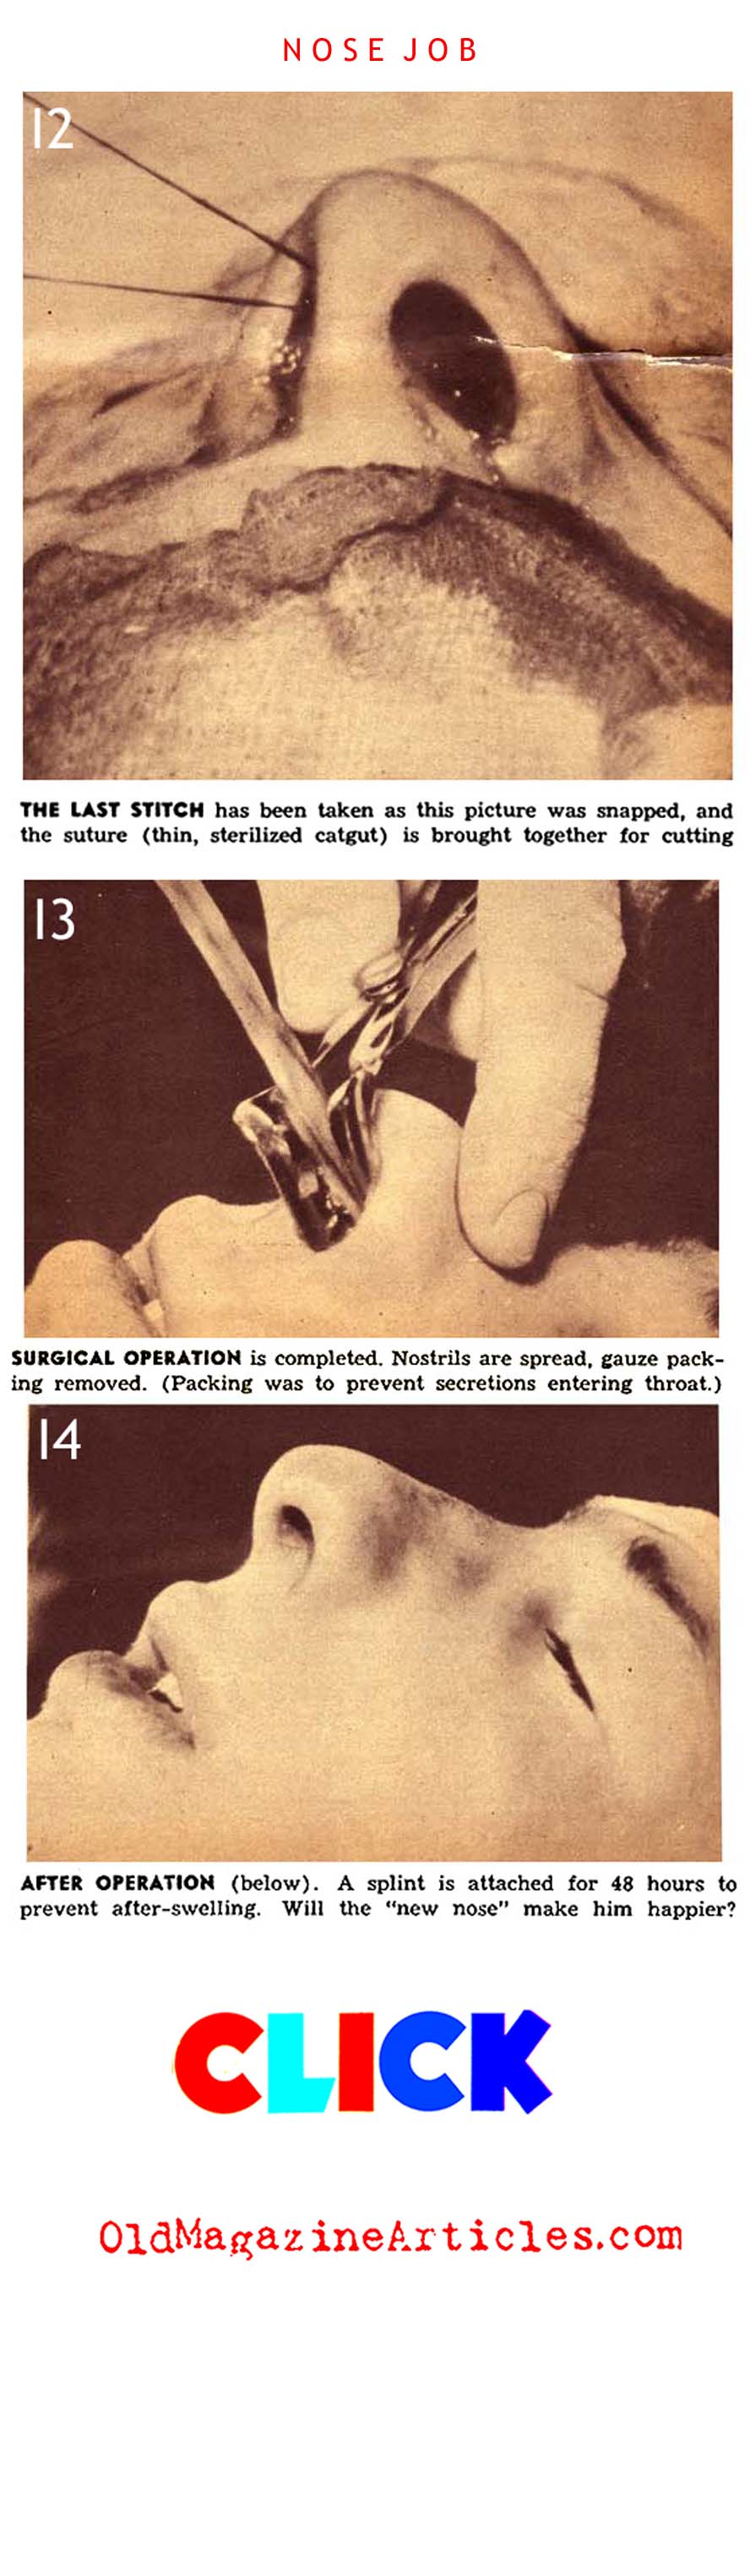 Nose-Bobbing (Click Magazine, 1938)